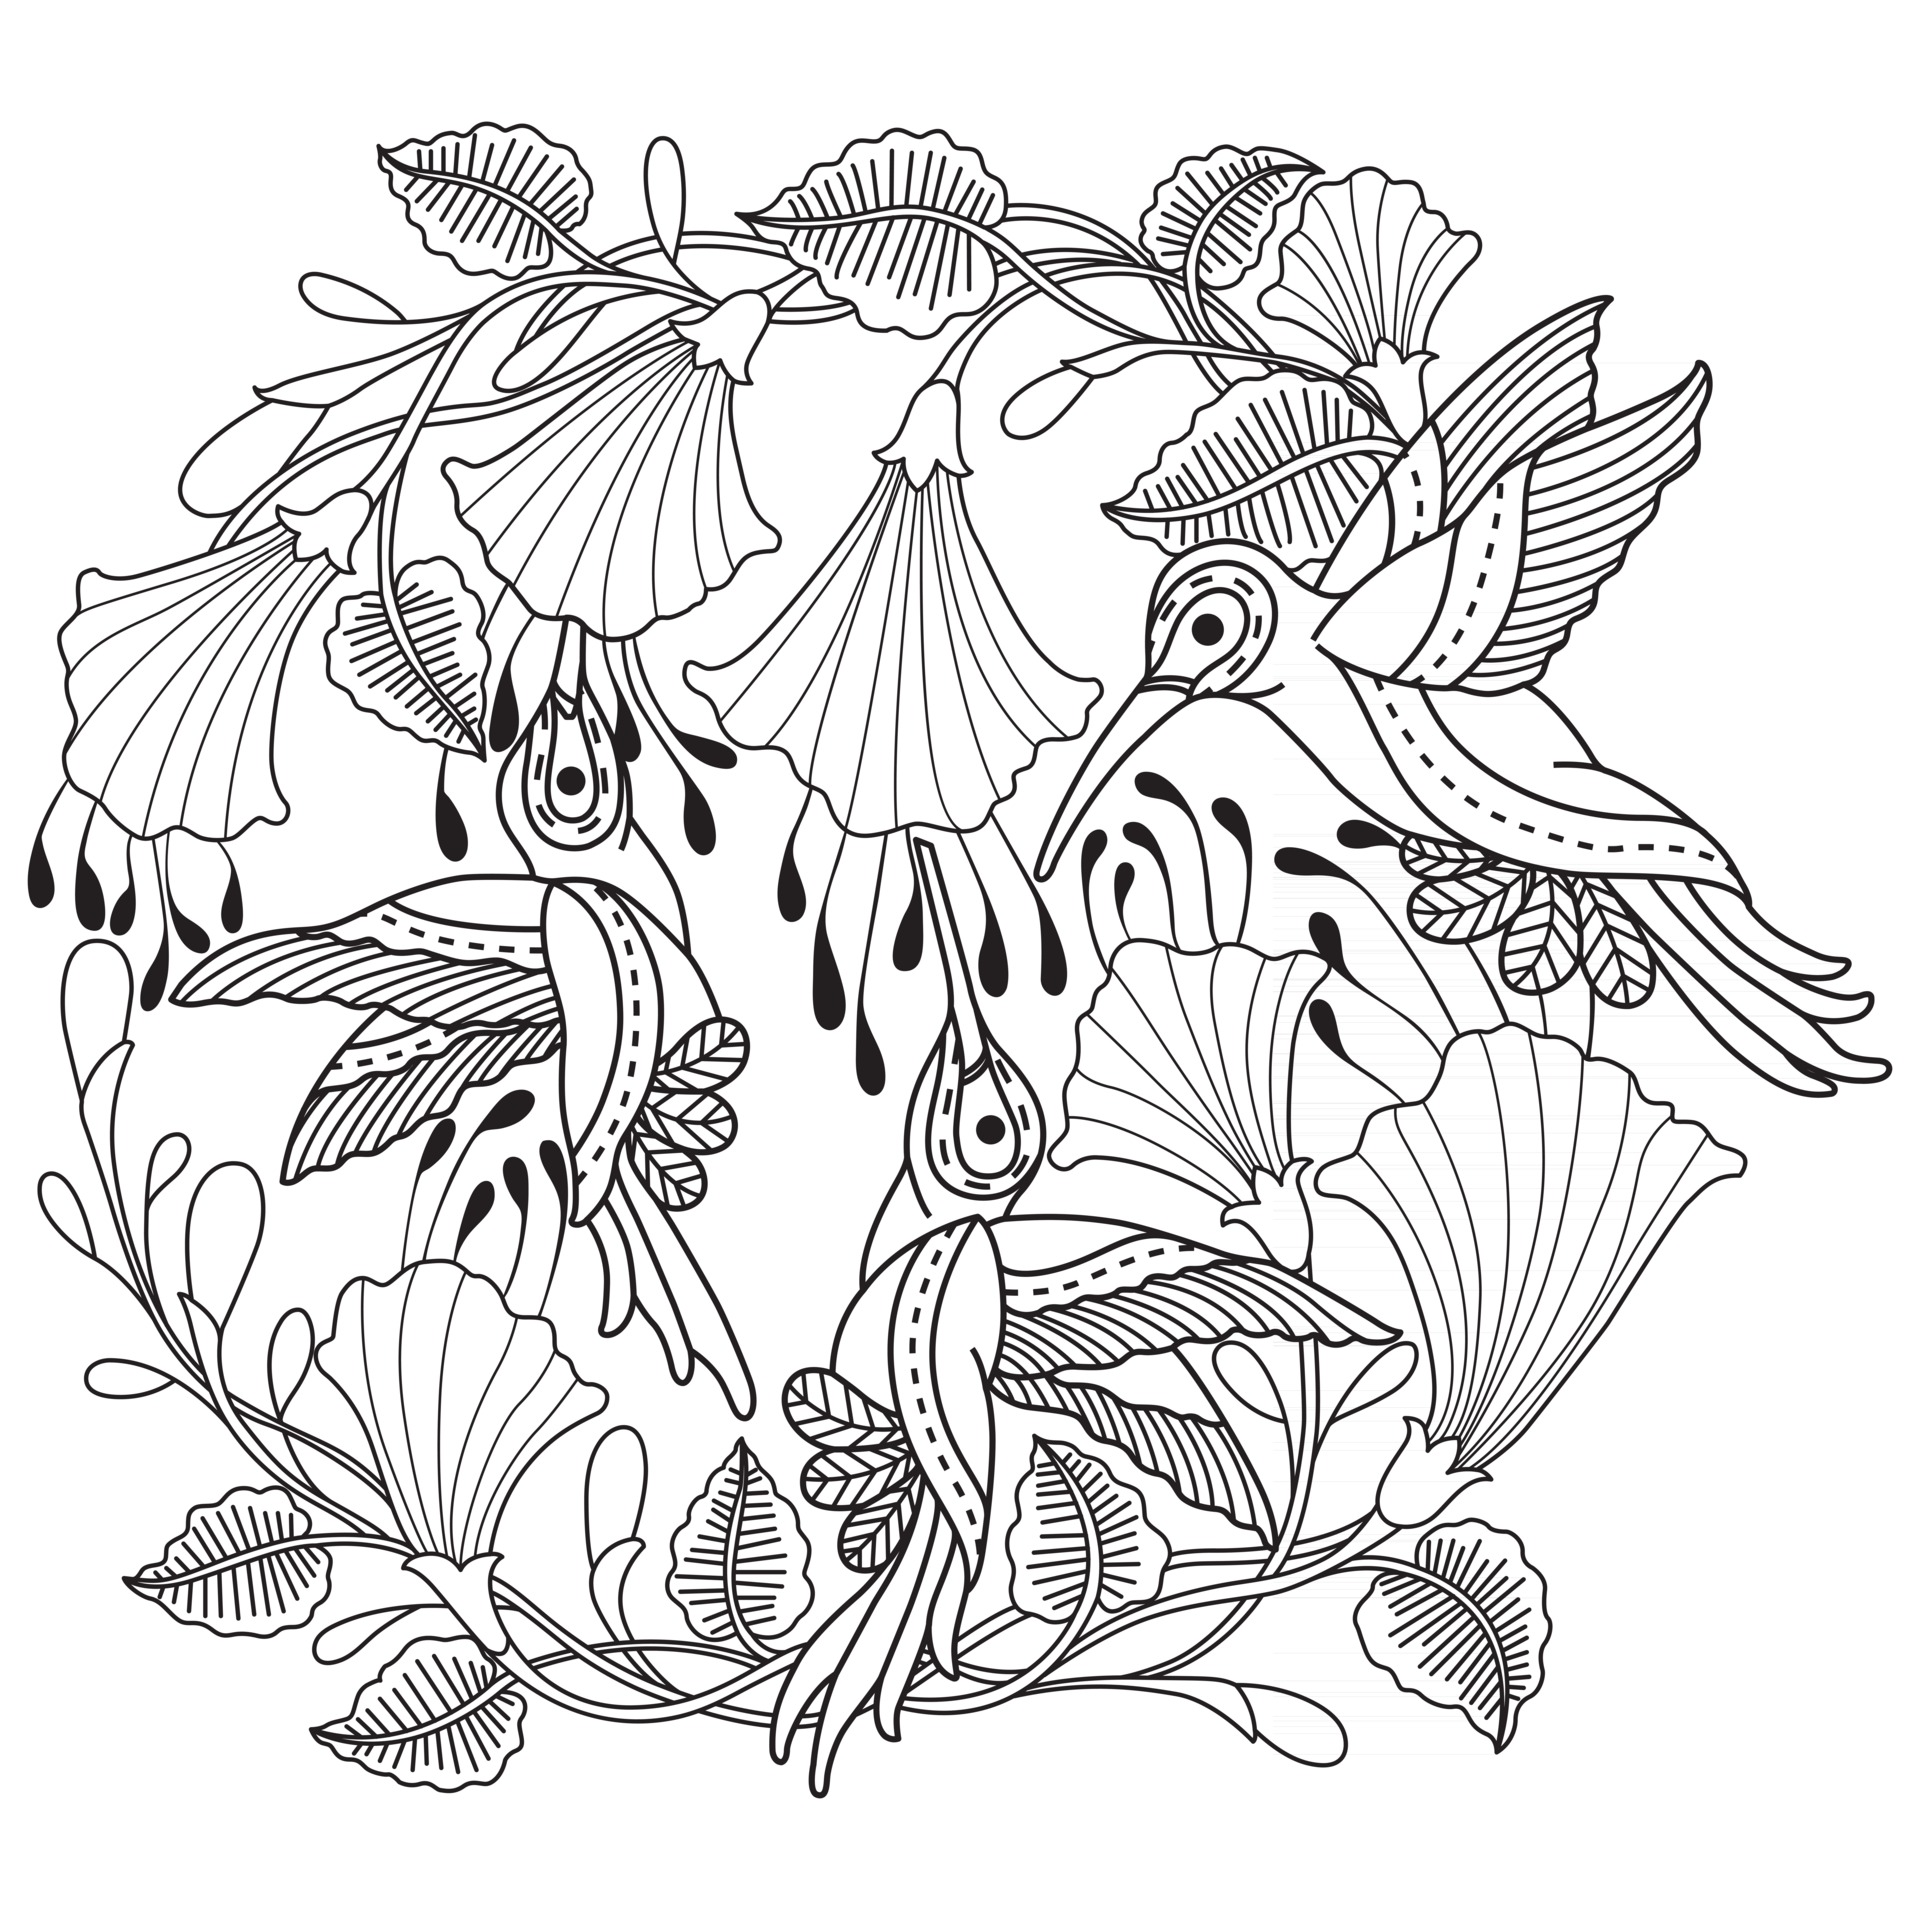 Beija flor. mão desenhada desenho ilustração para livro de colorir adulto